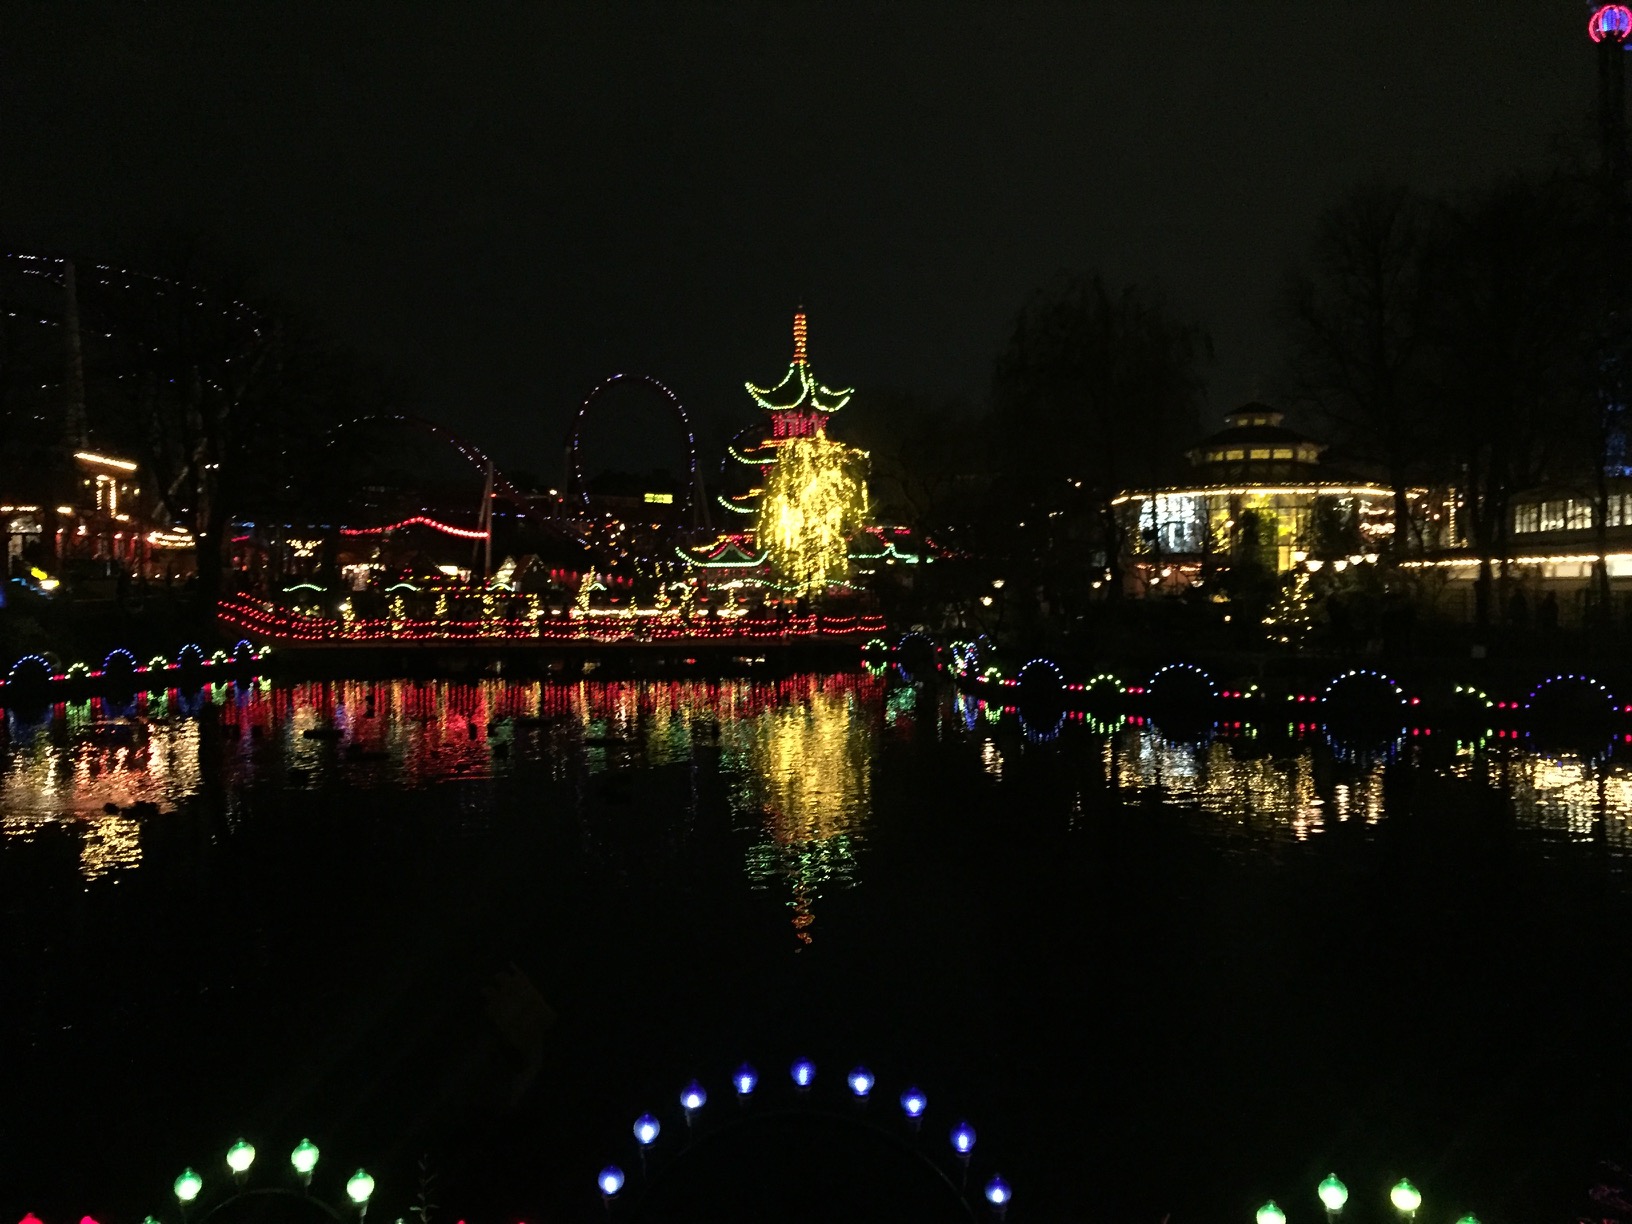 A lake reflects a lit-up amusement park pagoda.